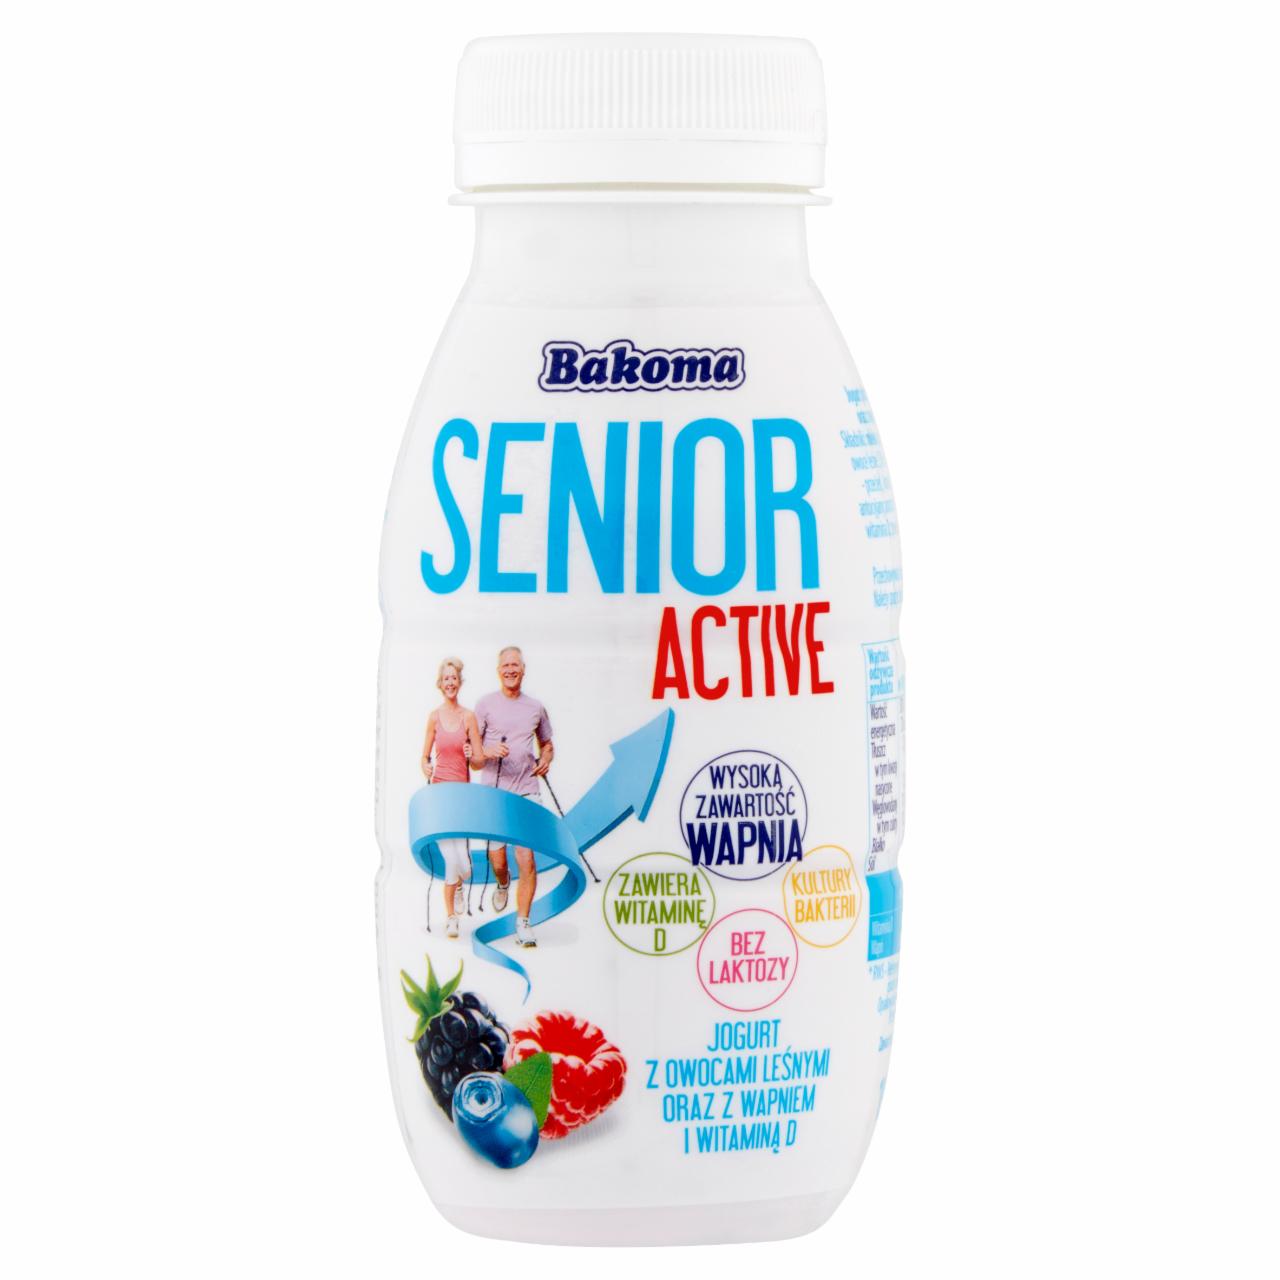 Zdjęcia - Bakoma Senior Active Jogurt z owocami leśnymi oraz z wapniem i witaminą D 190 g